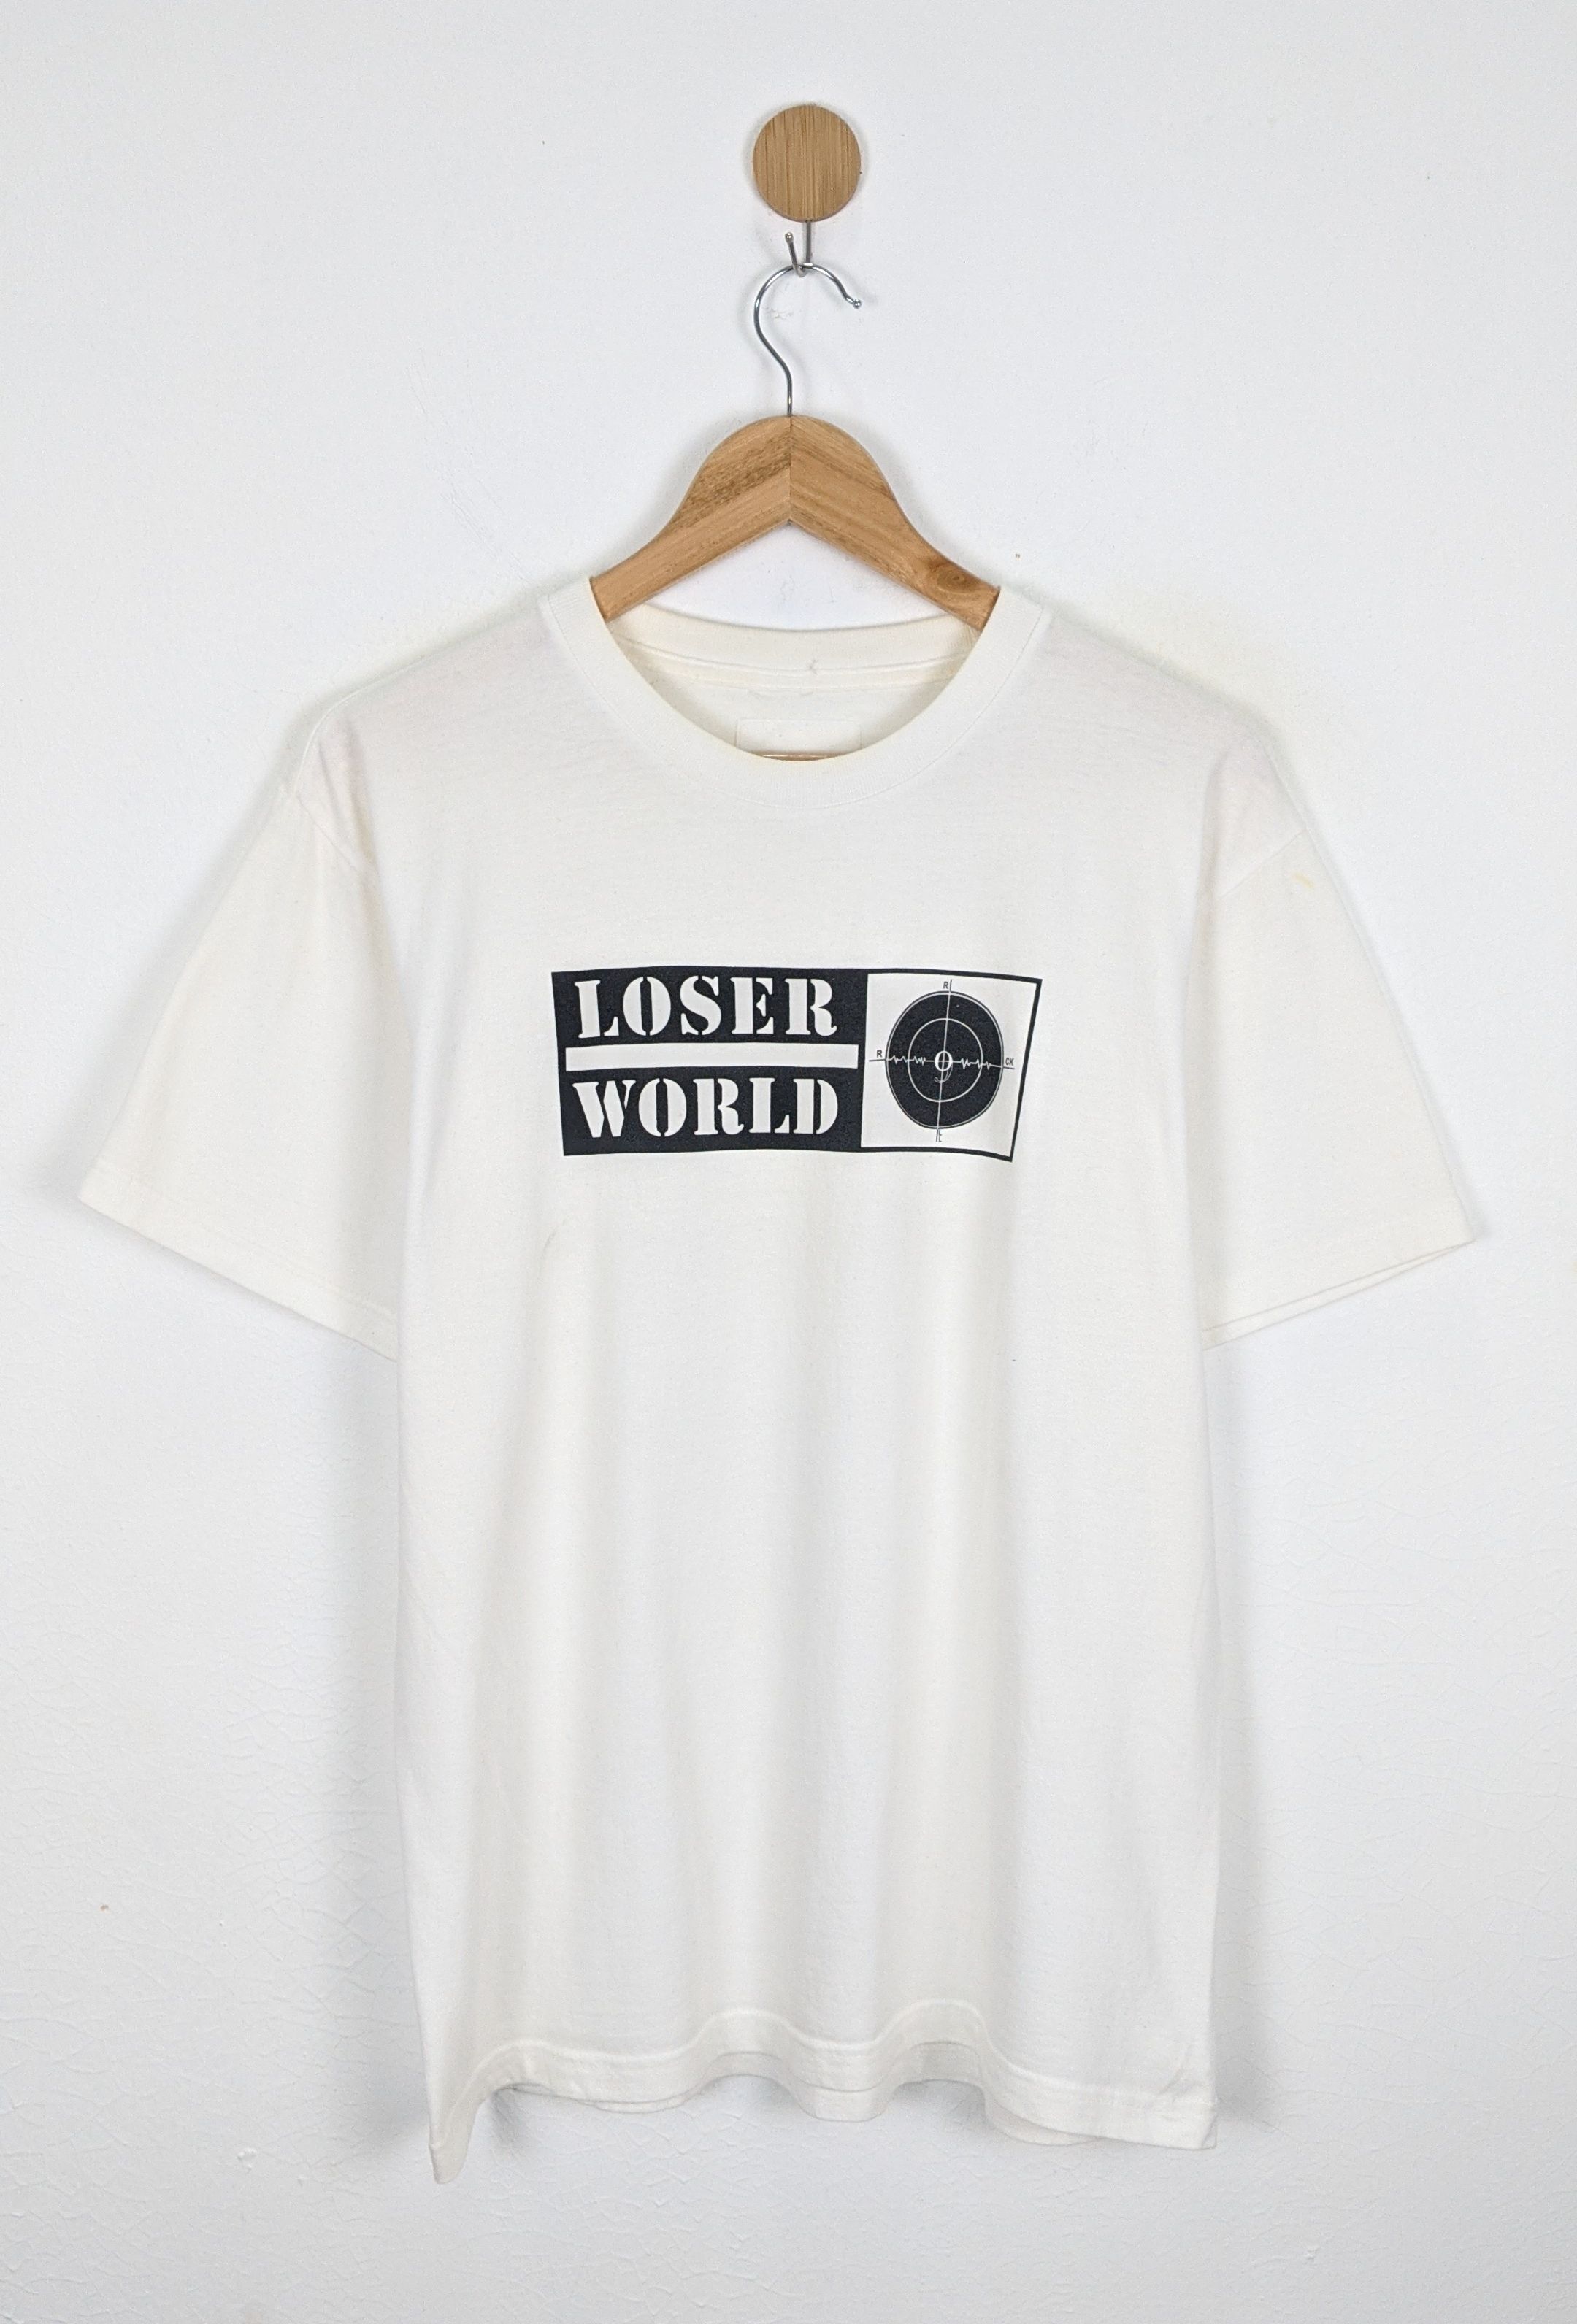 Number Nine Studio Loser World shirt - 1